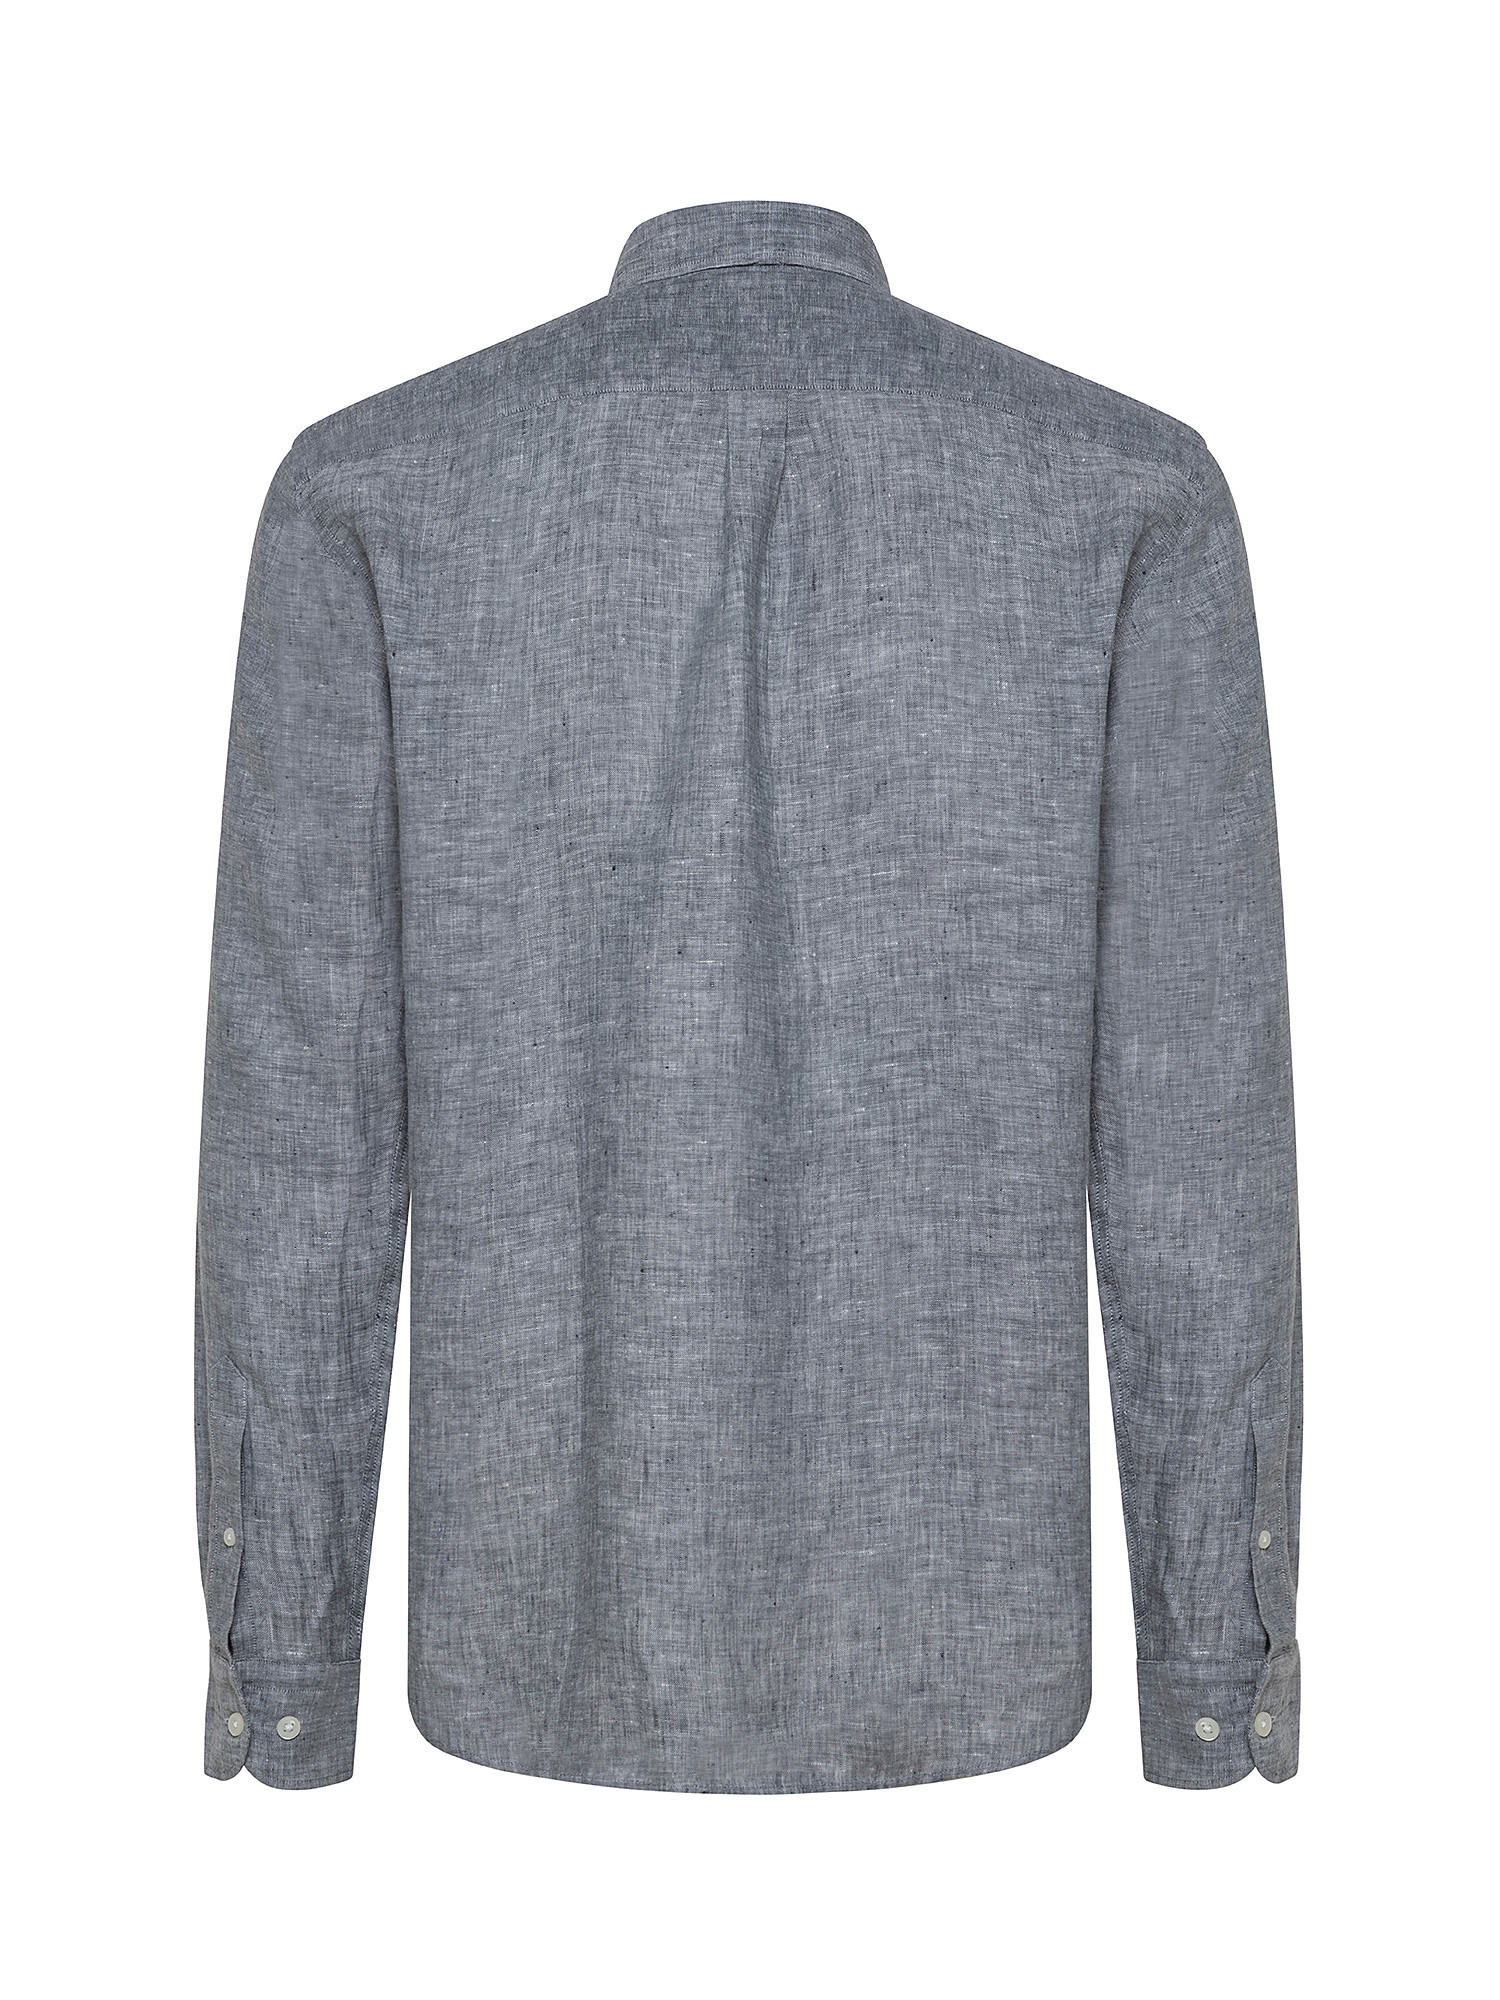 Linen shirt, Grey, large image number 1